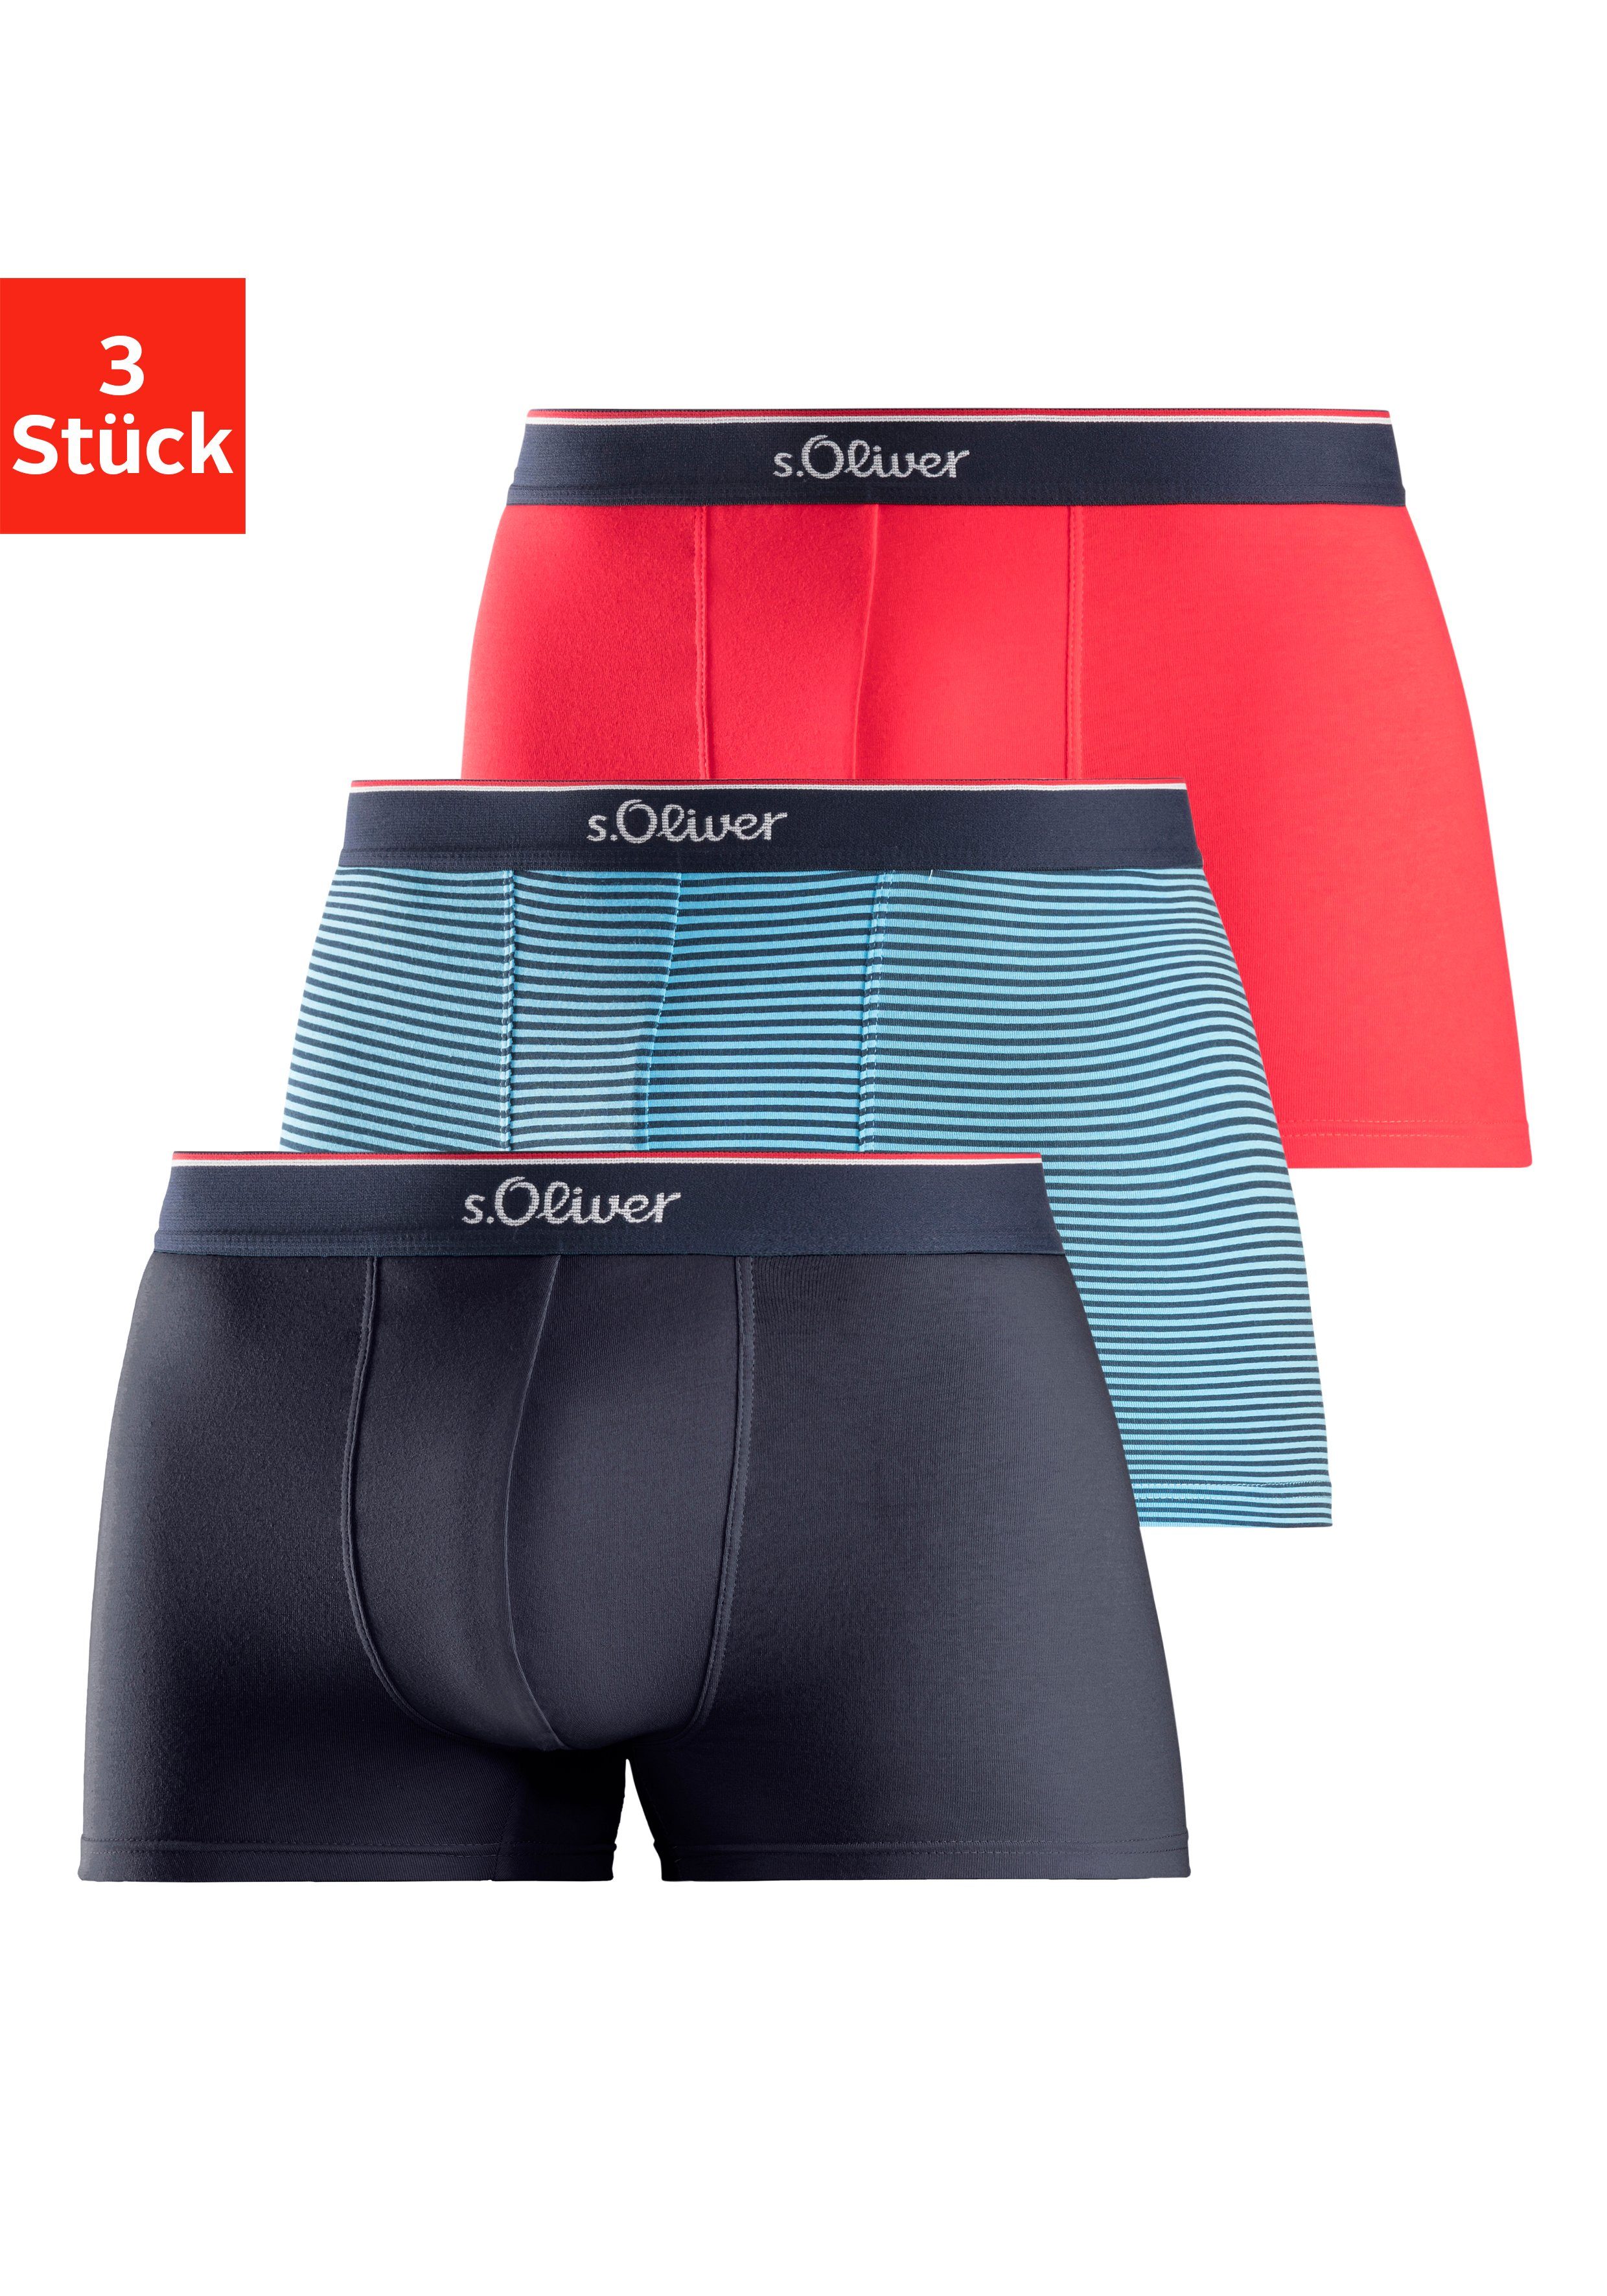 s.Oliver Boxer (Packung, 3-St) in modischen Designs rot, gestreift, navy